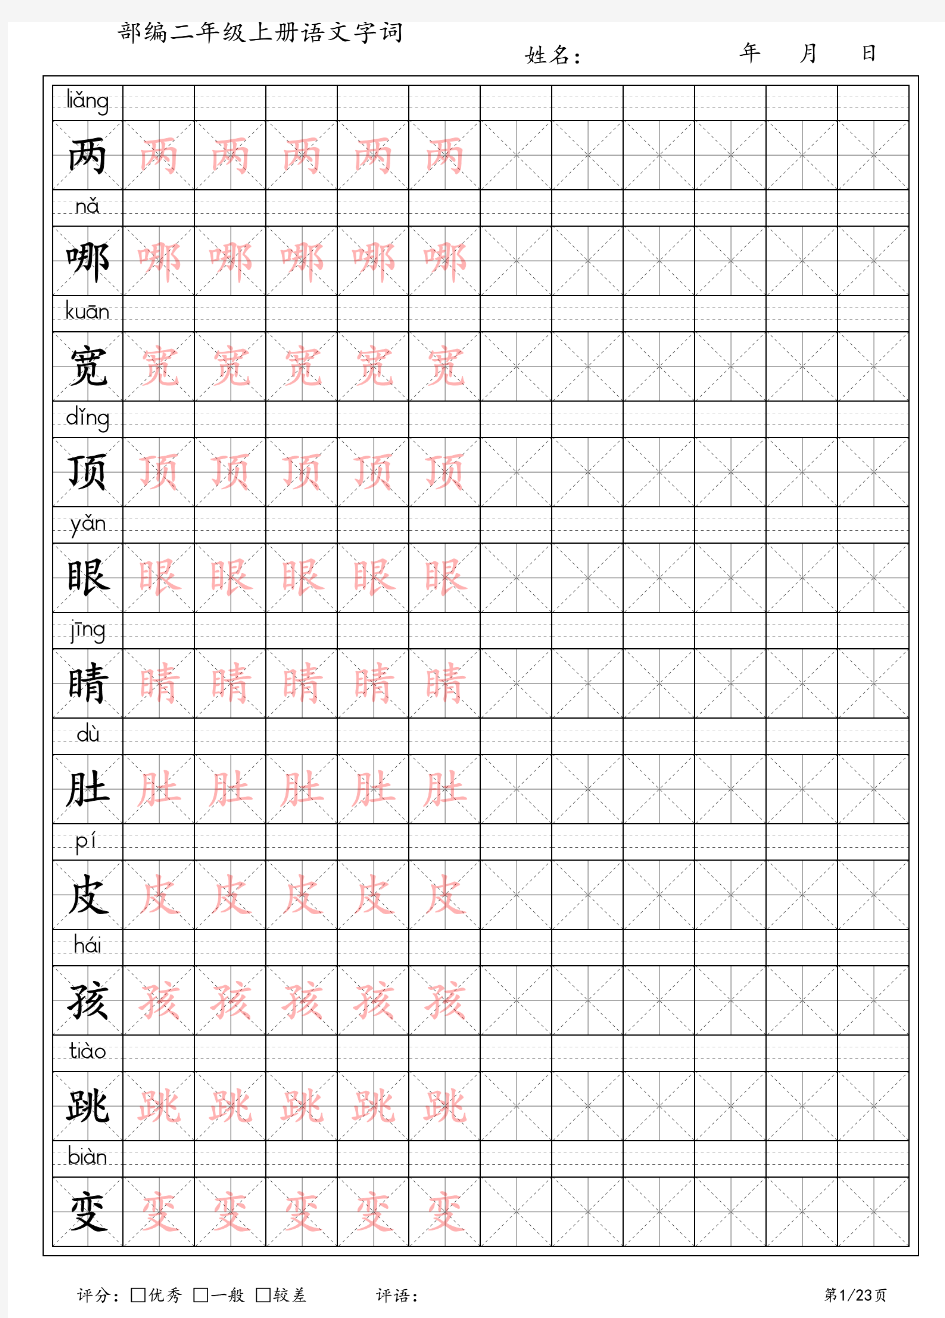 新部编人教版语文二年级上册生字练字字帖(带拼音),已排版可直接打印!